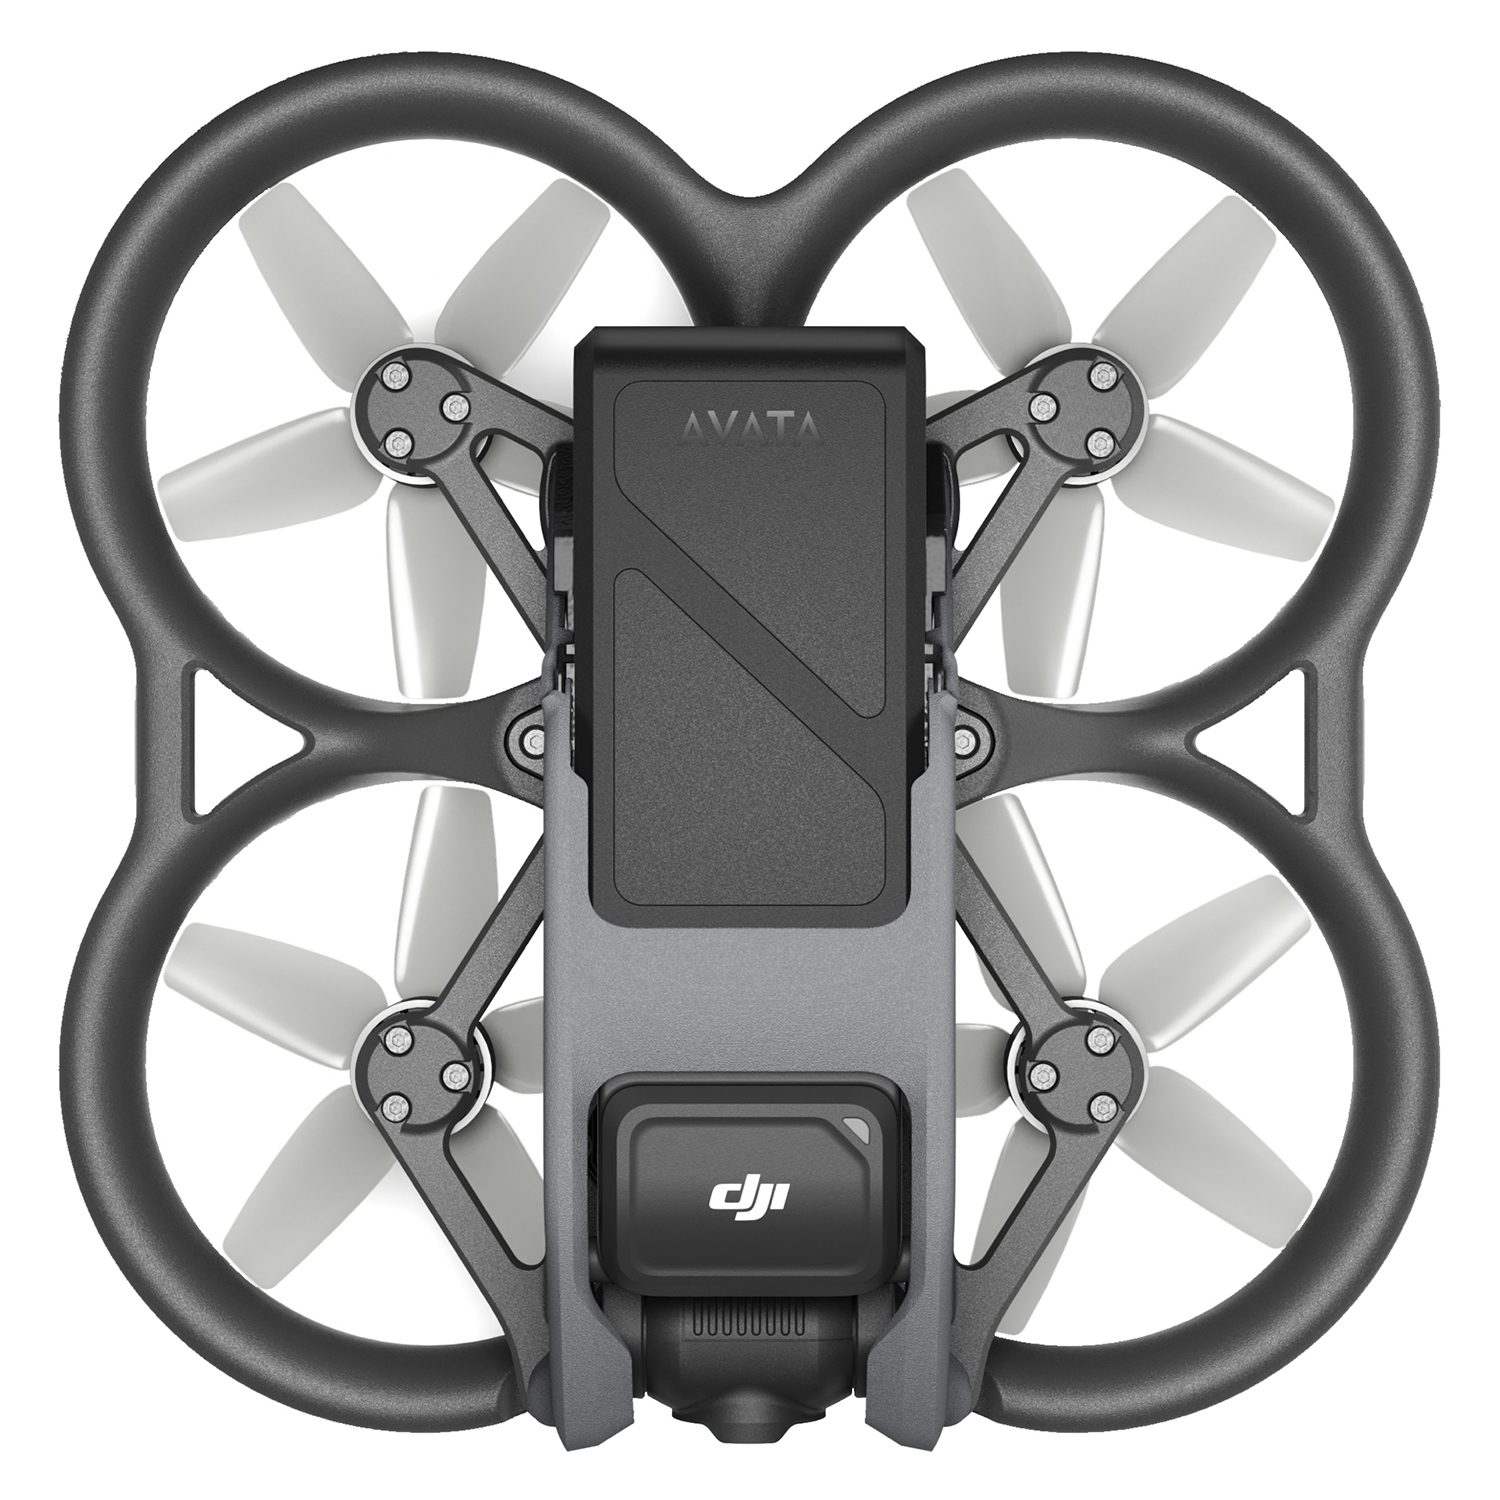 Drone DJI Avata Pro View Combo